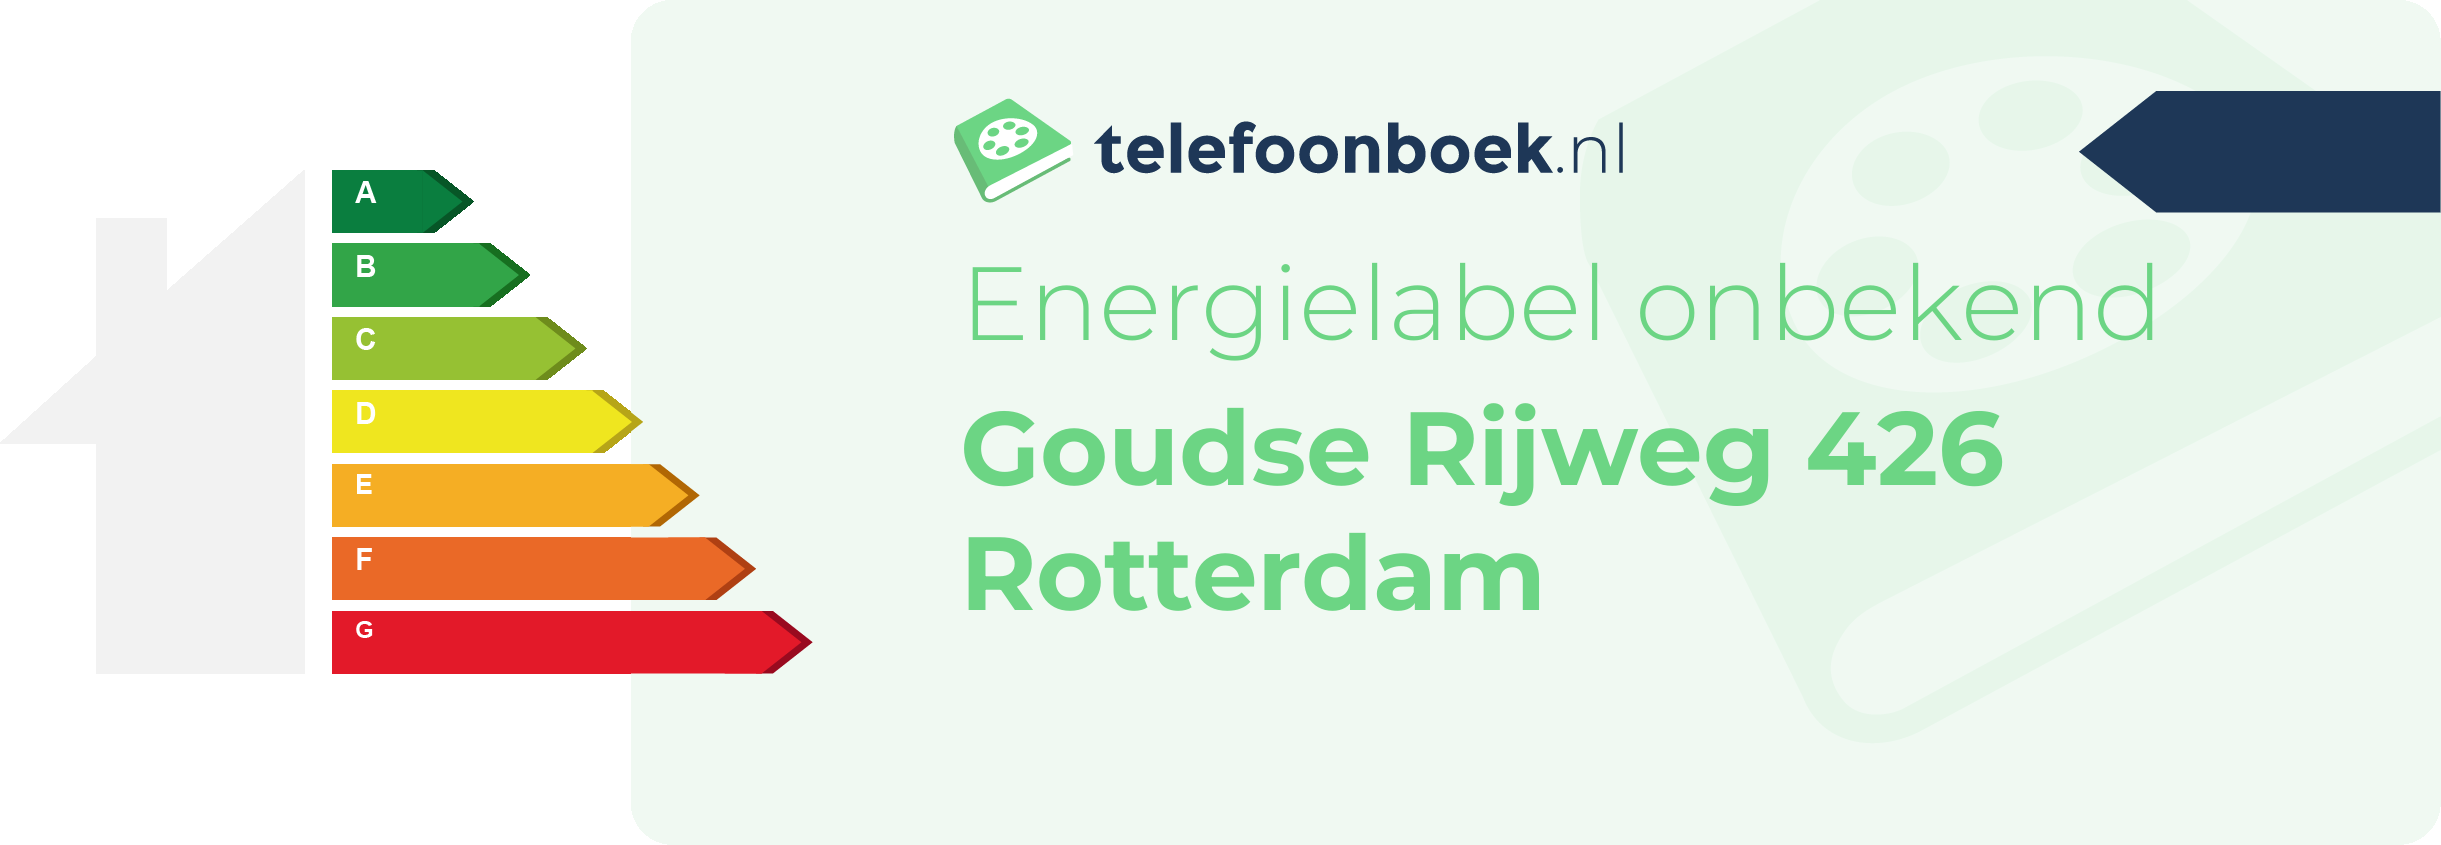 Energielabel Goudse Rijweg 426 Rotterdam